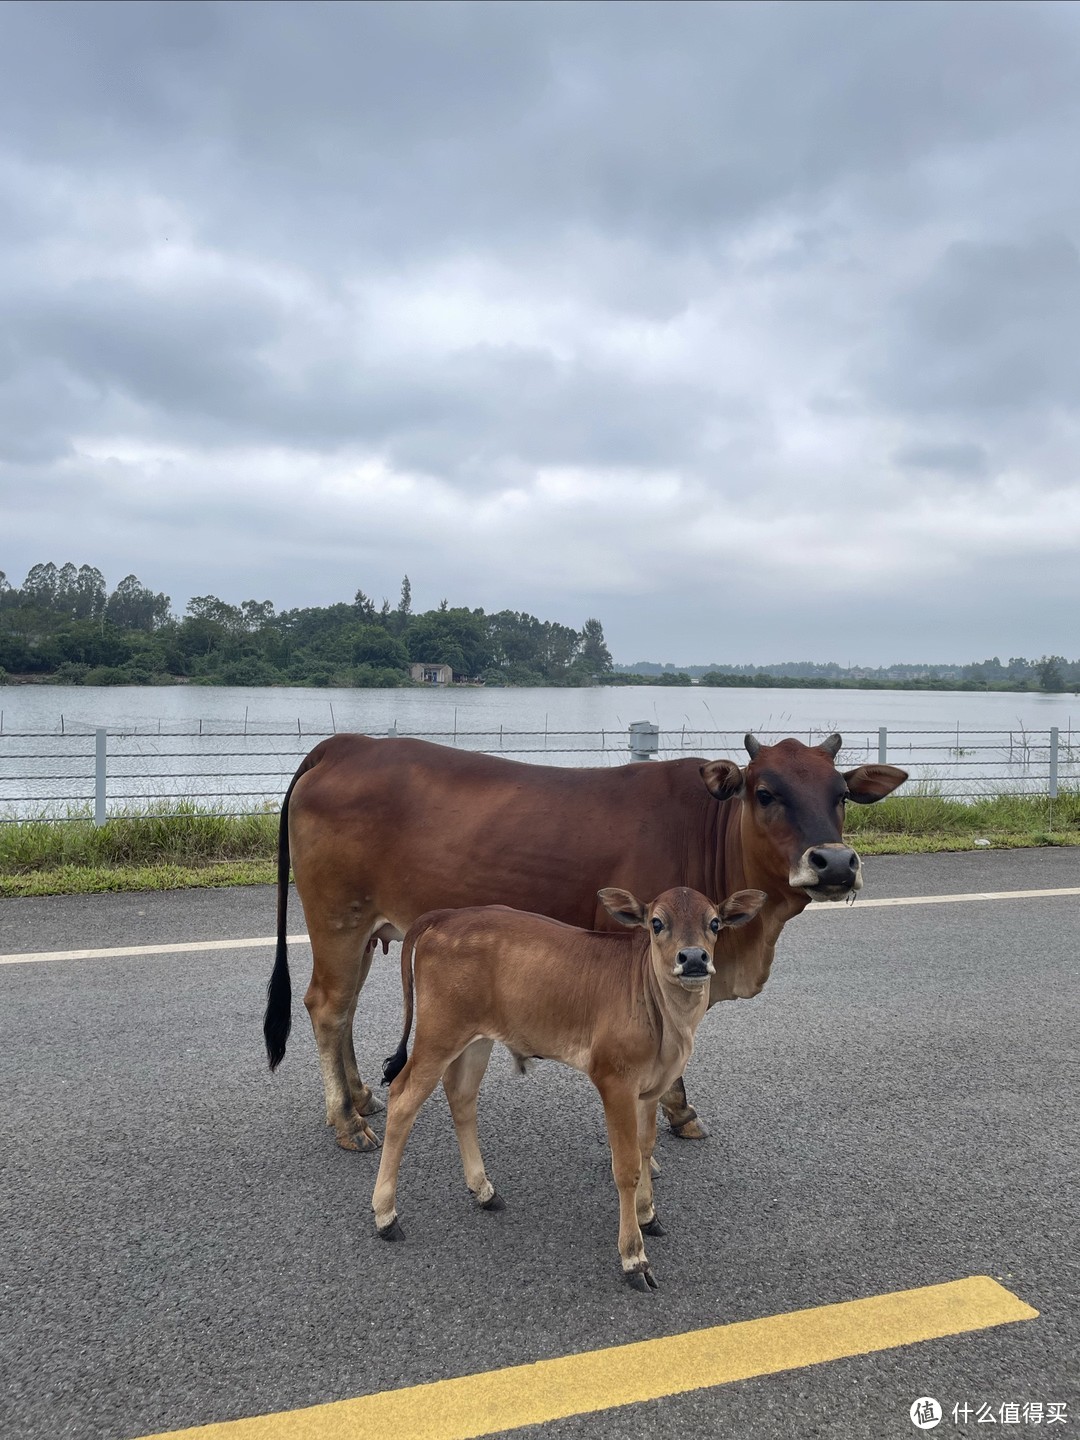 路上遇到的牛牛，好可爱 有车子路过的时候 牛妈妈会把下巴抵在牛宝宝的头上护住